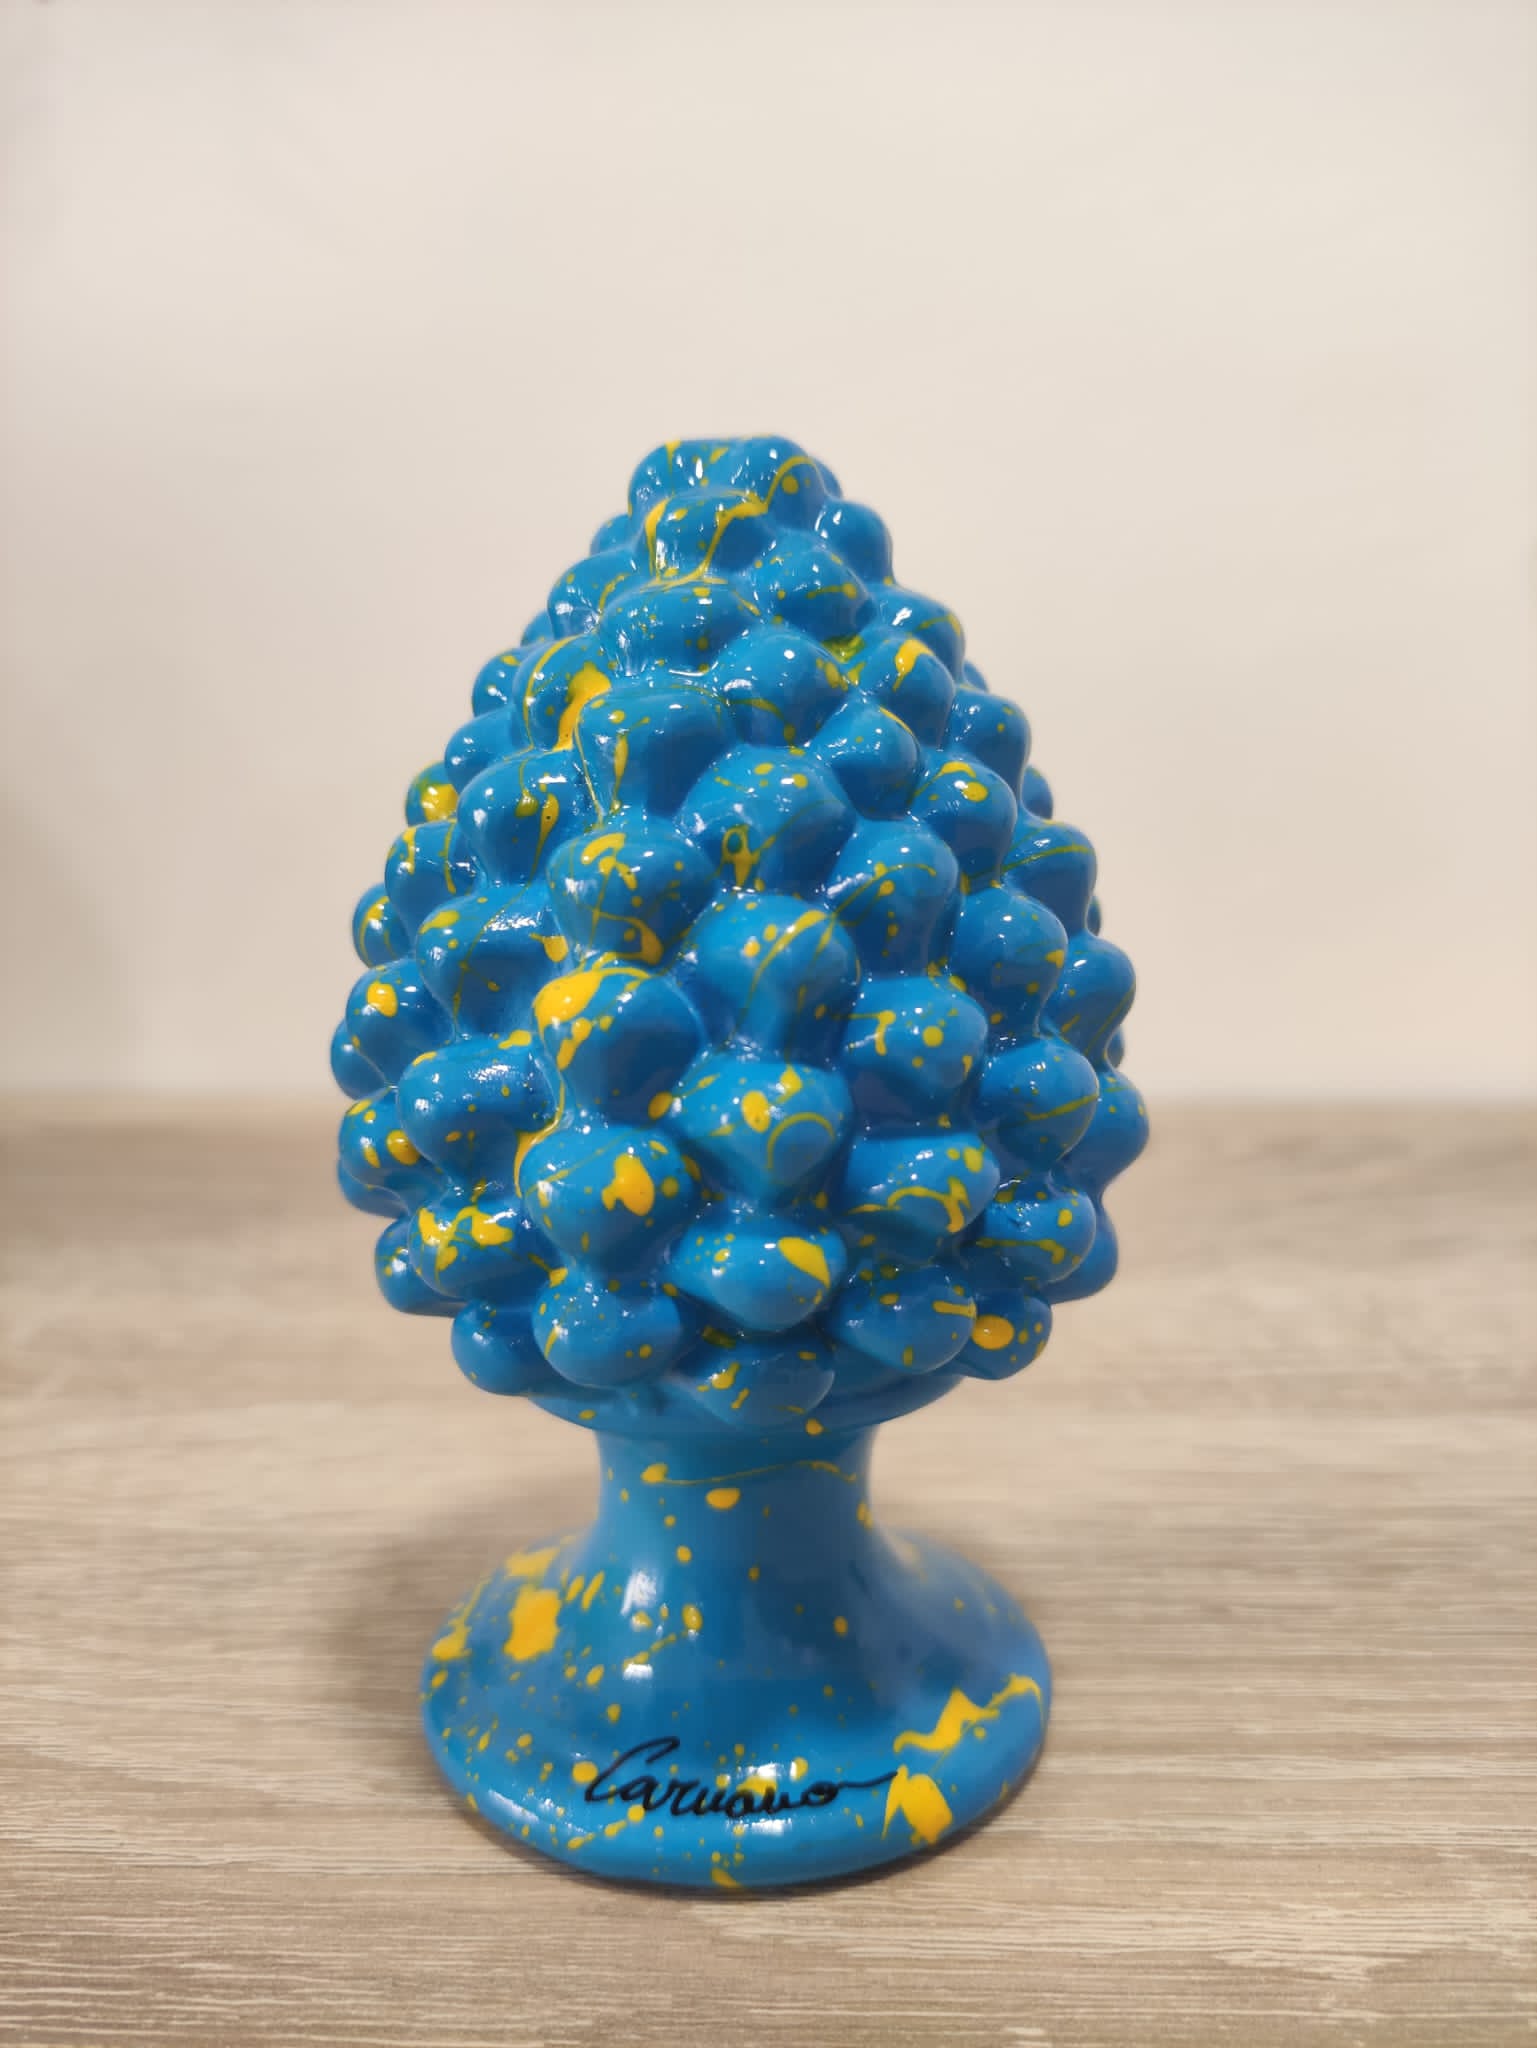 Pigna in Ceramica Siciliana Artigianale - 12 cm - Azzurro e Giallo